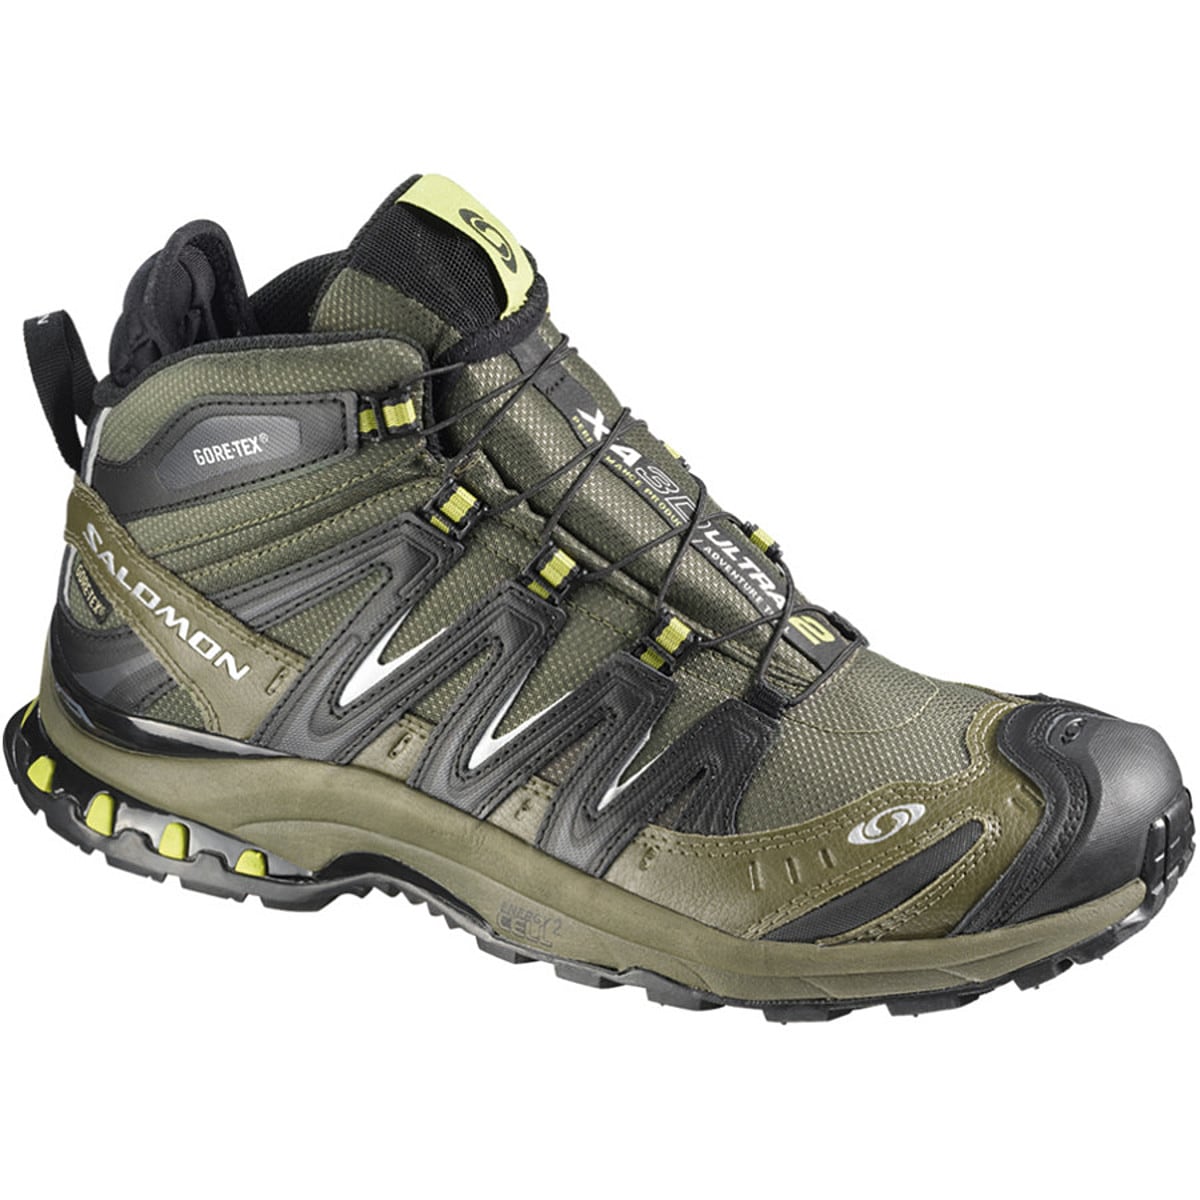 Salomon XA Pro 3D Mid GTX Ultra Trail Running Shoe - Men's - Footwear